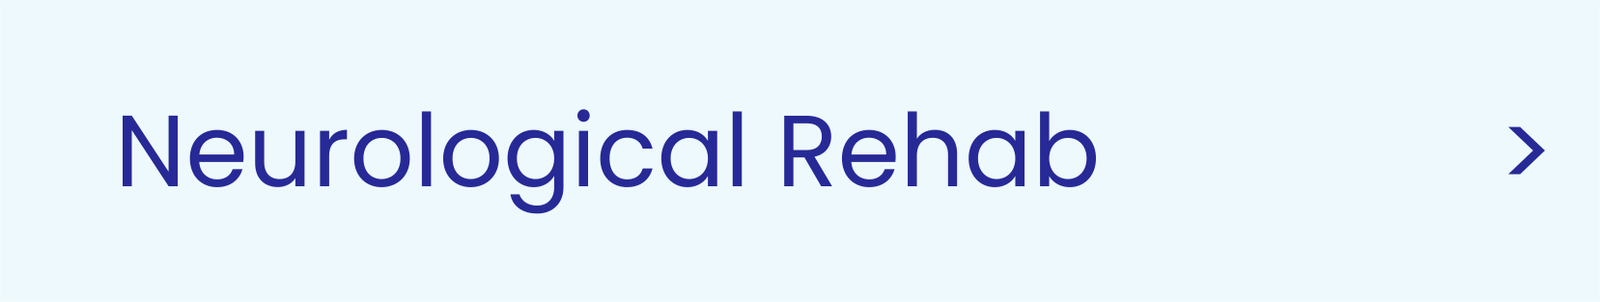 Rheumatic Rehab Neuro Tab 1